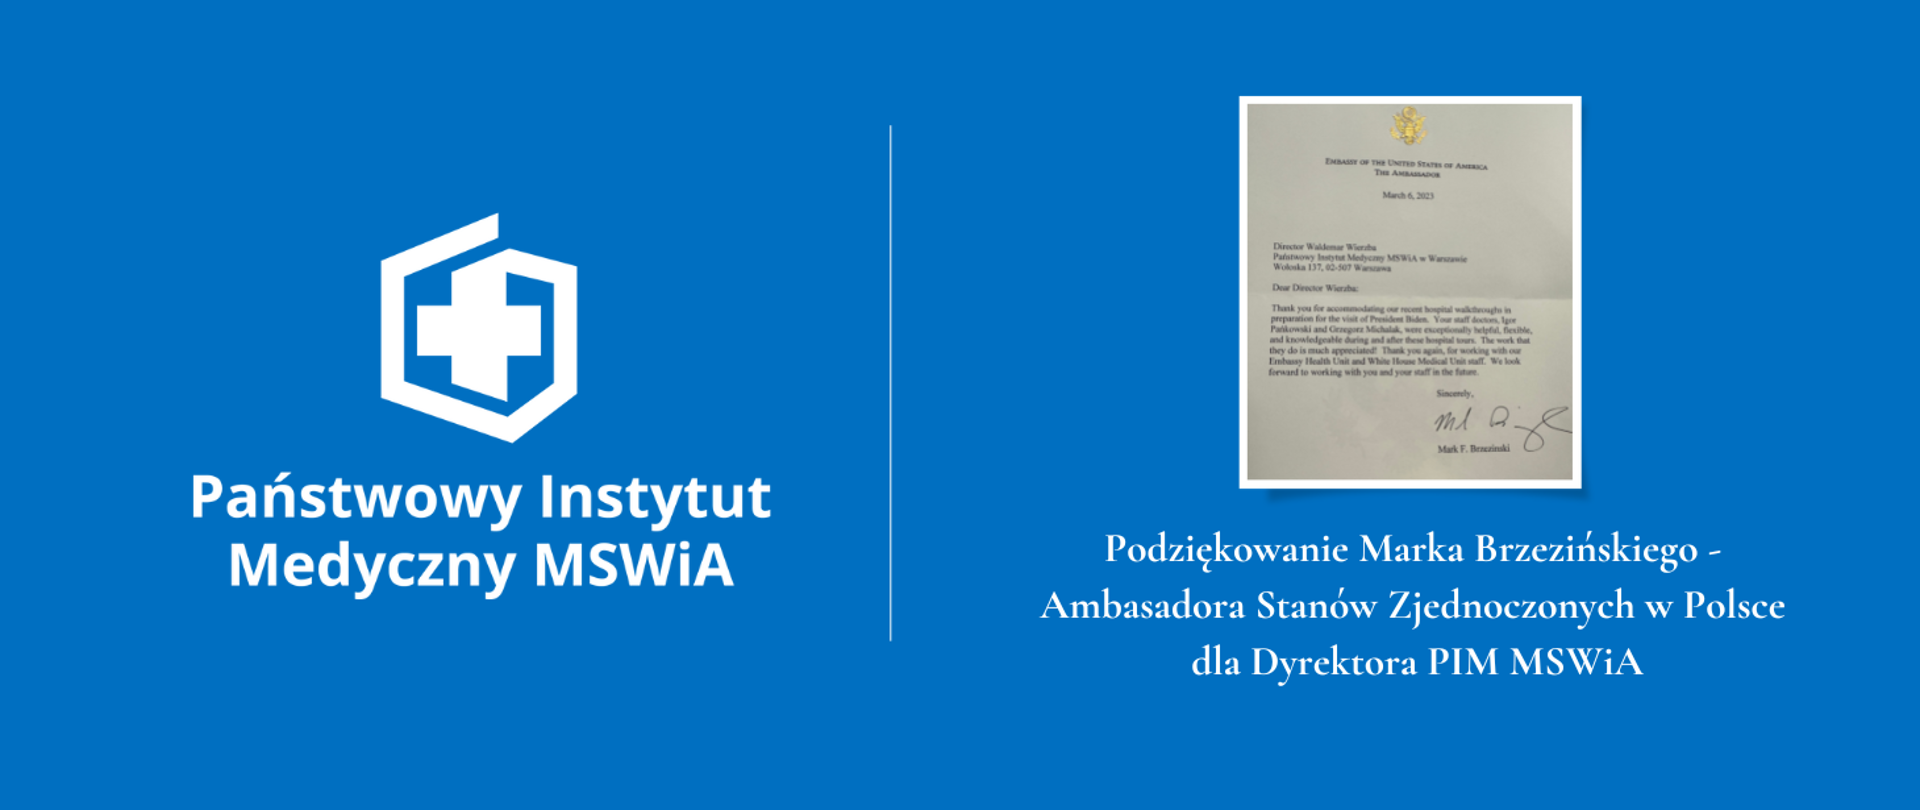 Podziękowania od Marka Brzezińskiego - Ambasadora Stanów Zjednoczonych w Polsce dla Dyrektora PIM MSWiA